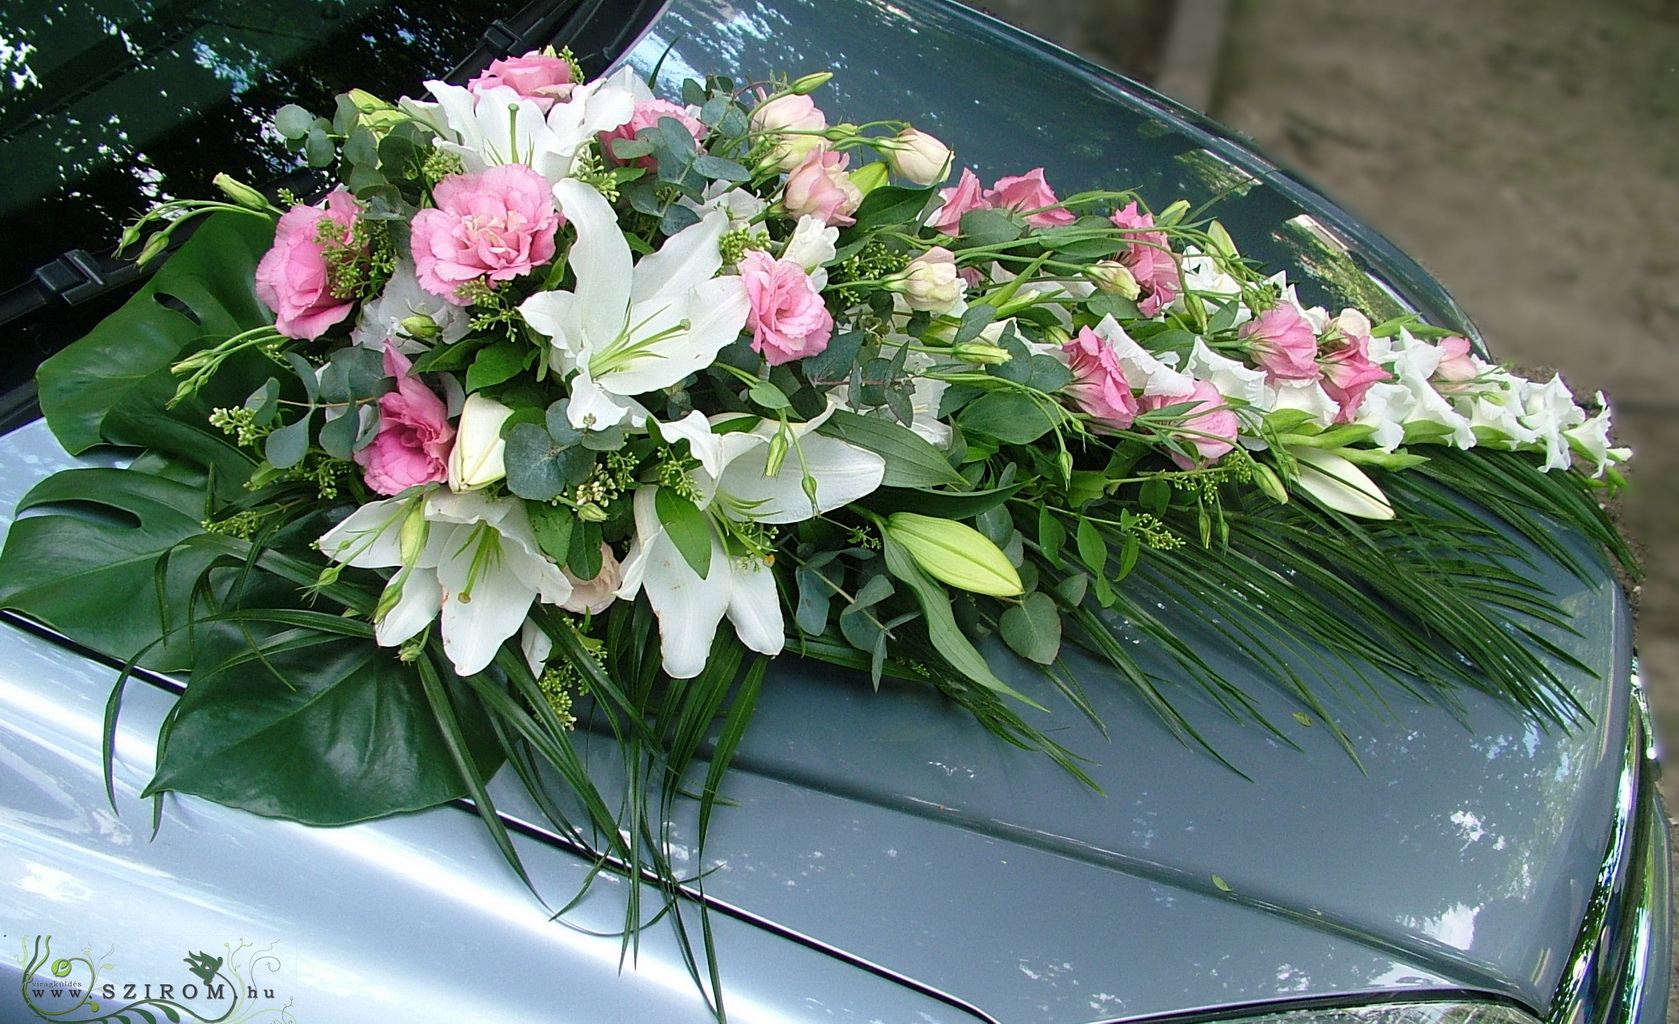 Virágküldés Budapest - csepp autódísz (liziantusz, kardvirág, orientál liliom, fehér, rózsaszín)